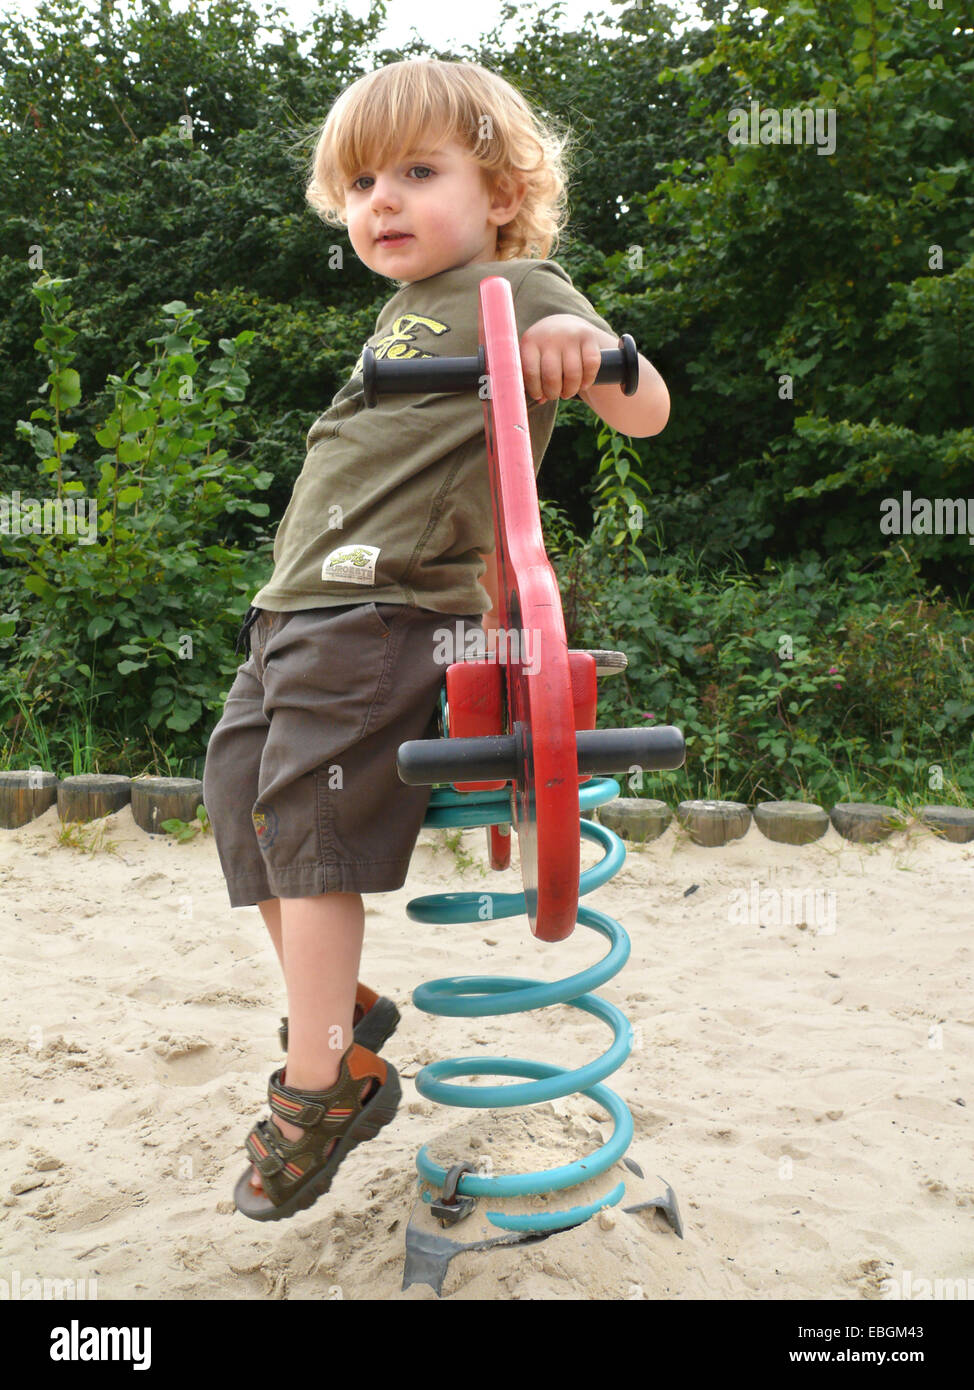 kleiner Junge am Springer auf dem Spielplatz Stockfoto